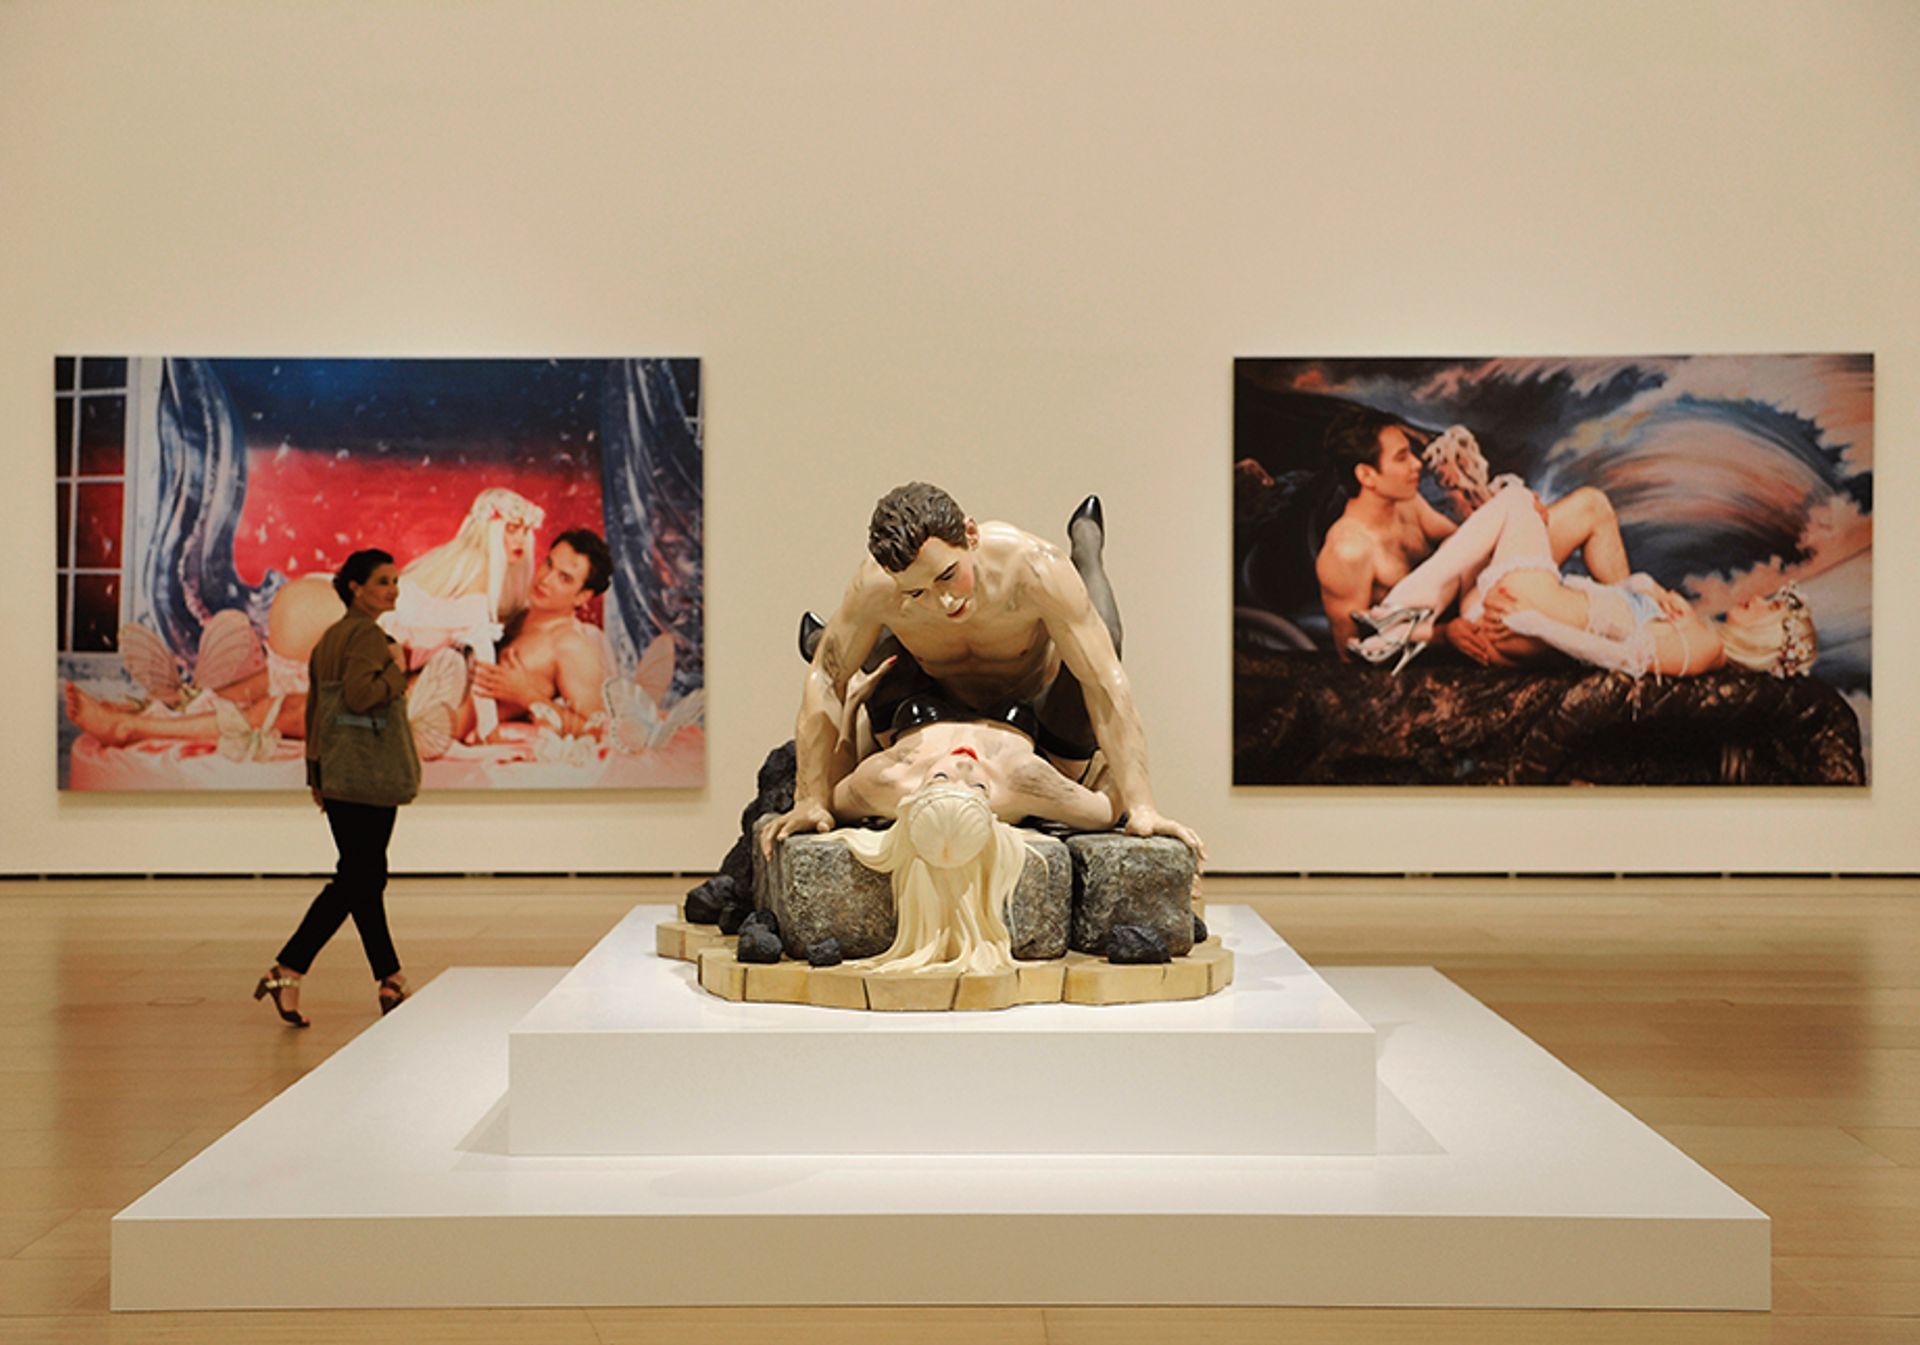 מייקל היידן טוען ששלוש יצירות בסדרה של קונס מ-1989, Made in Heaven, שהוצגה ברטרוספקטיבה בגוגנהיים בילבאו ב-2015 - משלבות את הפסל שלו

אנדר גילנאה / AFP באמצעות Getty Images


